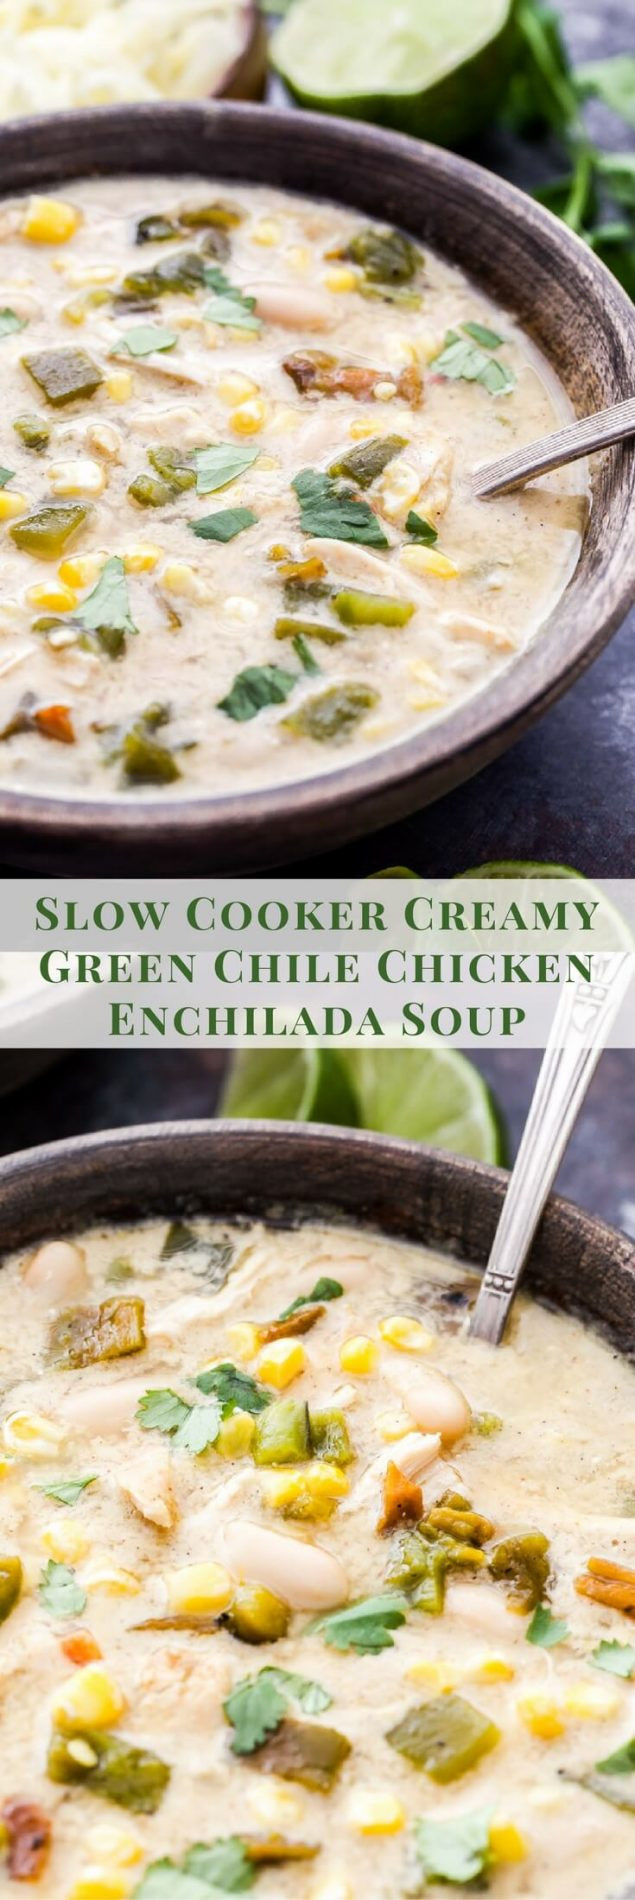 Slow Cooker Green Chile Chicken Enchiladas
 Slow Cooker Creamy Green Chile Chicken Enchilada Soup